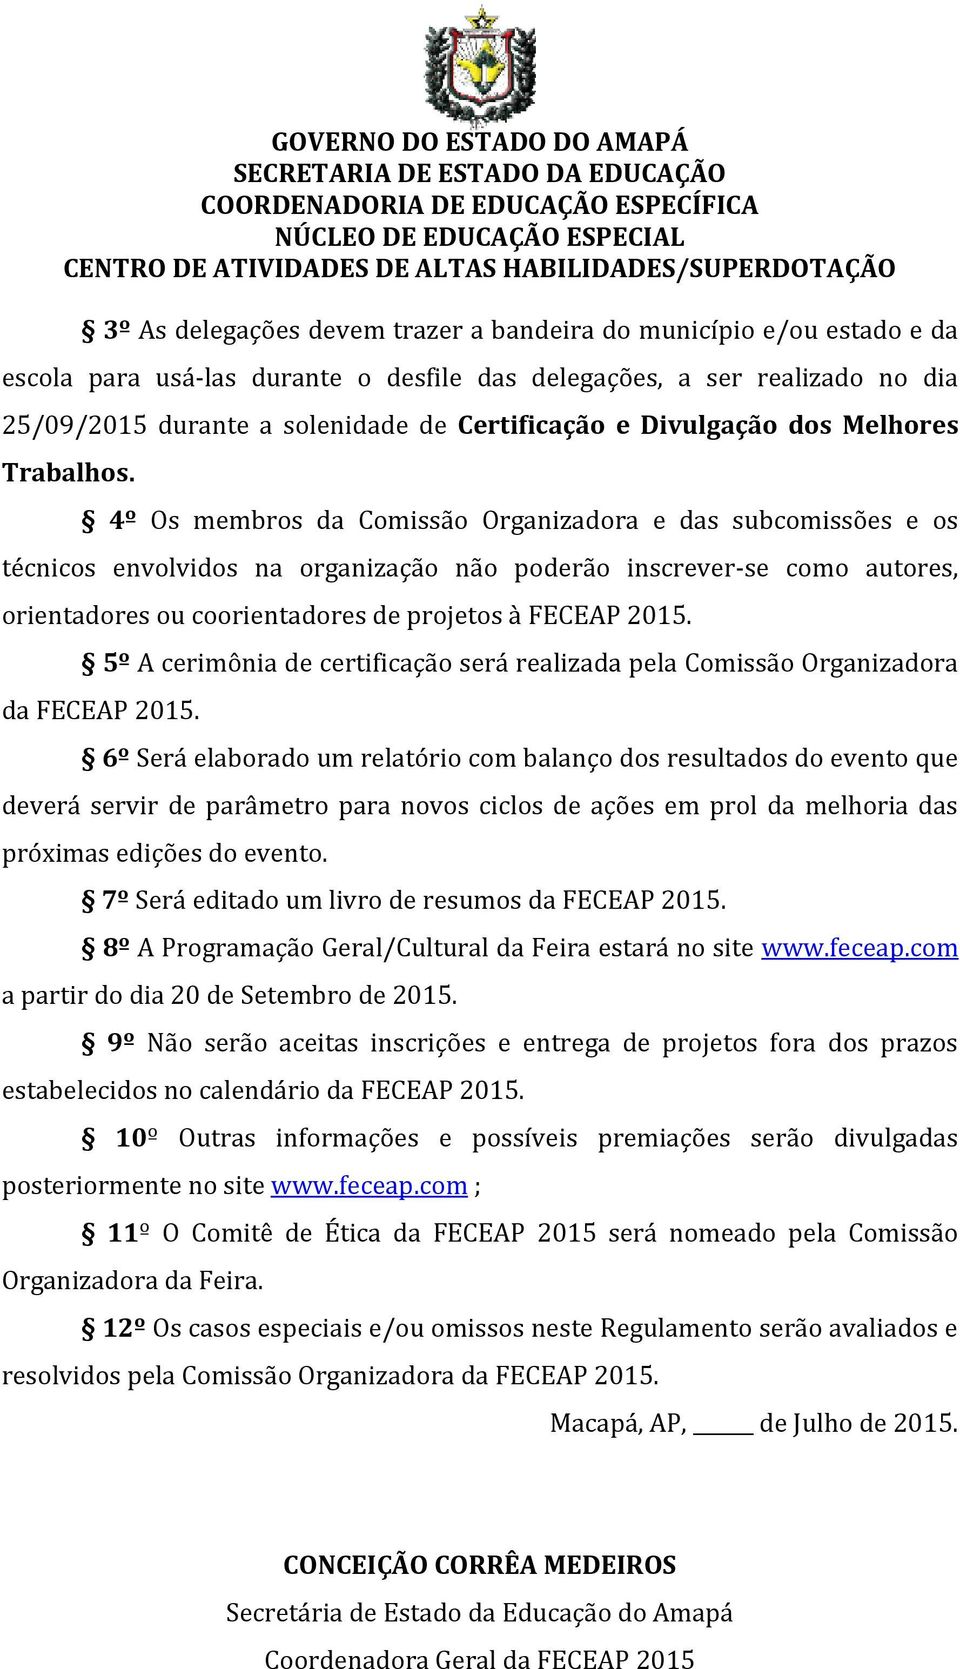 4º Os membros da Comissão Organizadora e das subcomissões e os técnicos envolvidos na organização não poderão inscrever-se como autores, orientadores ou coorientadores de projetos à FECEAP 2015.